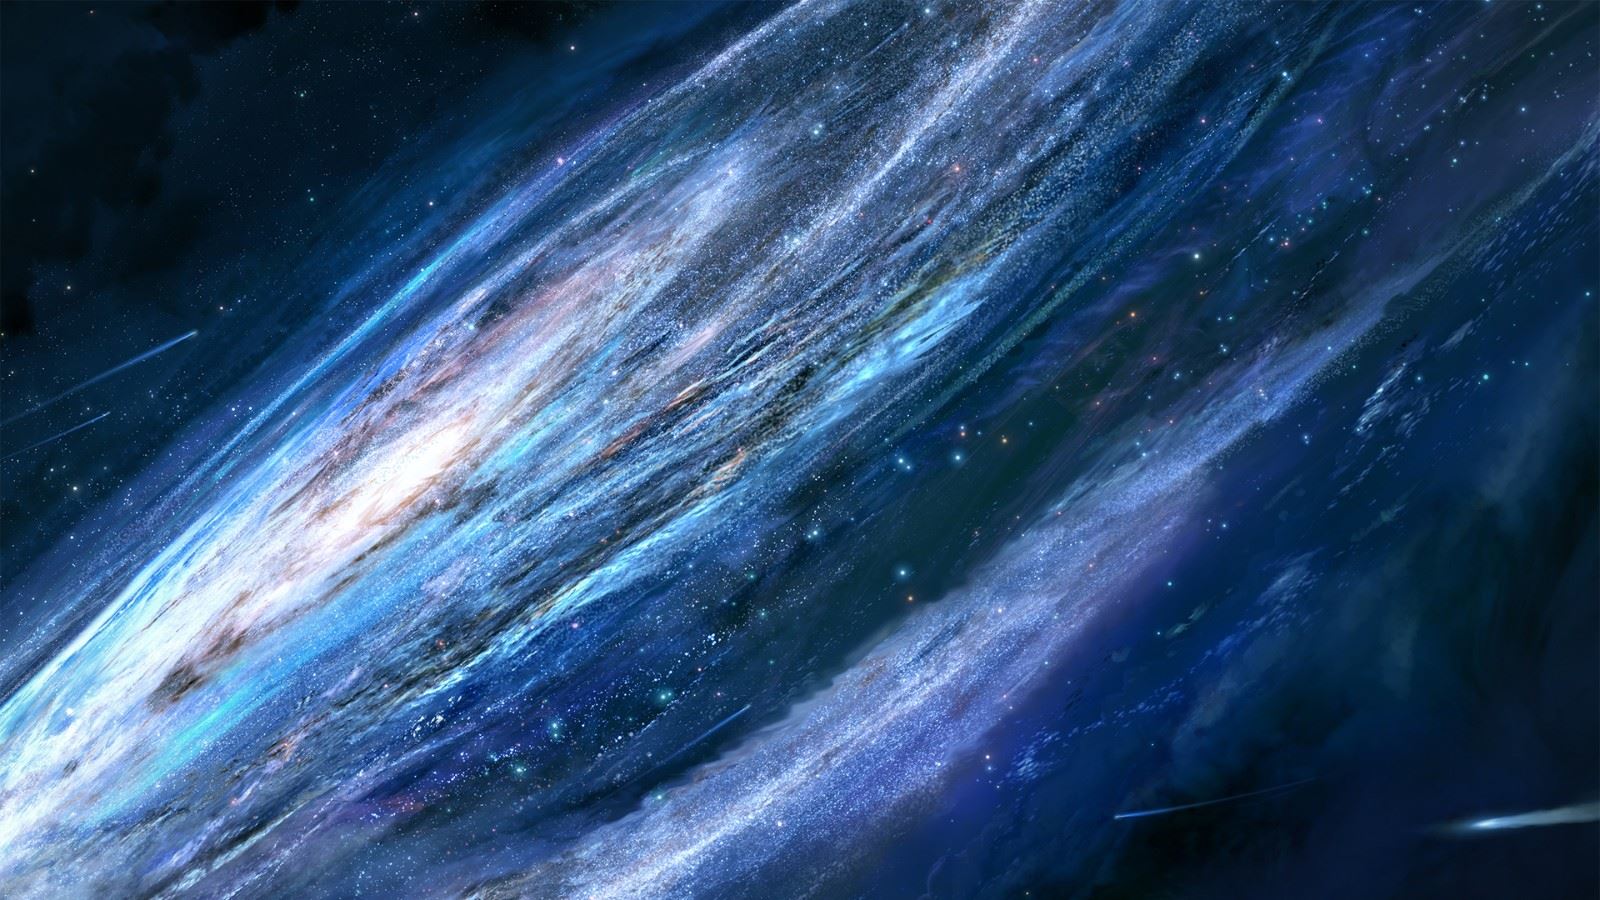 星辰大海梦幻色系风景图,是关于一些浩瀚图片,治愈图片,宇宙图片,星空